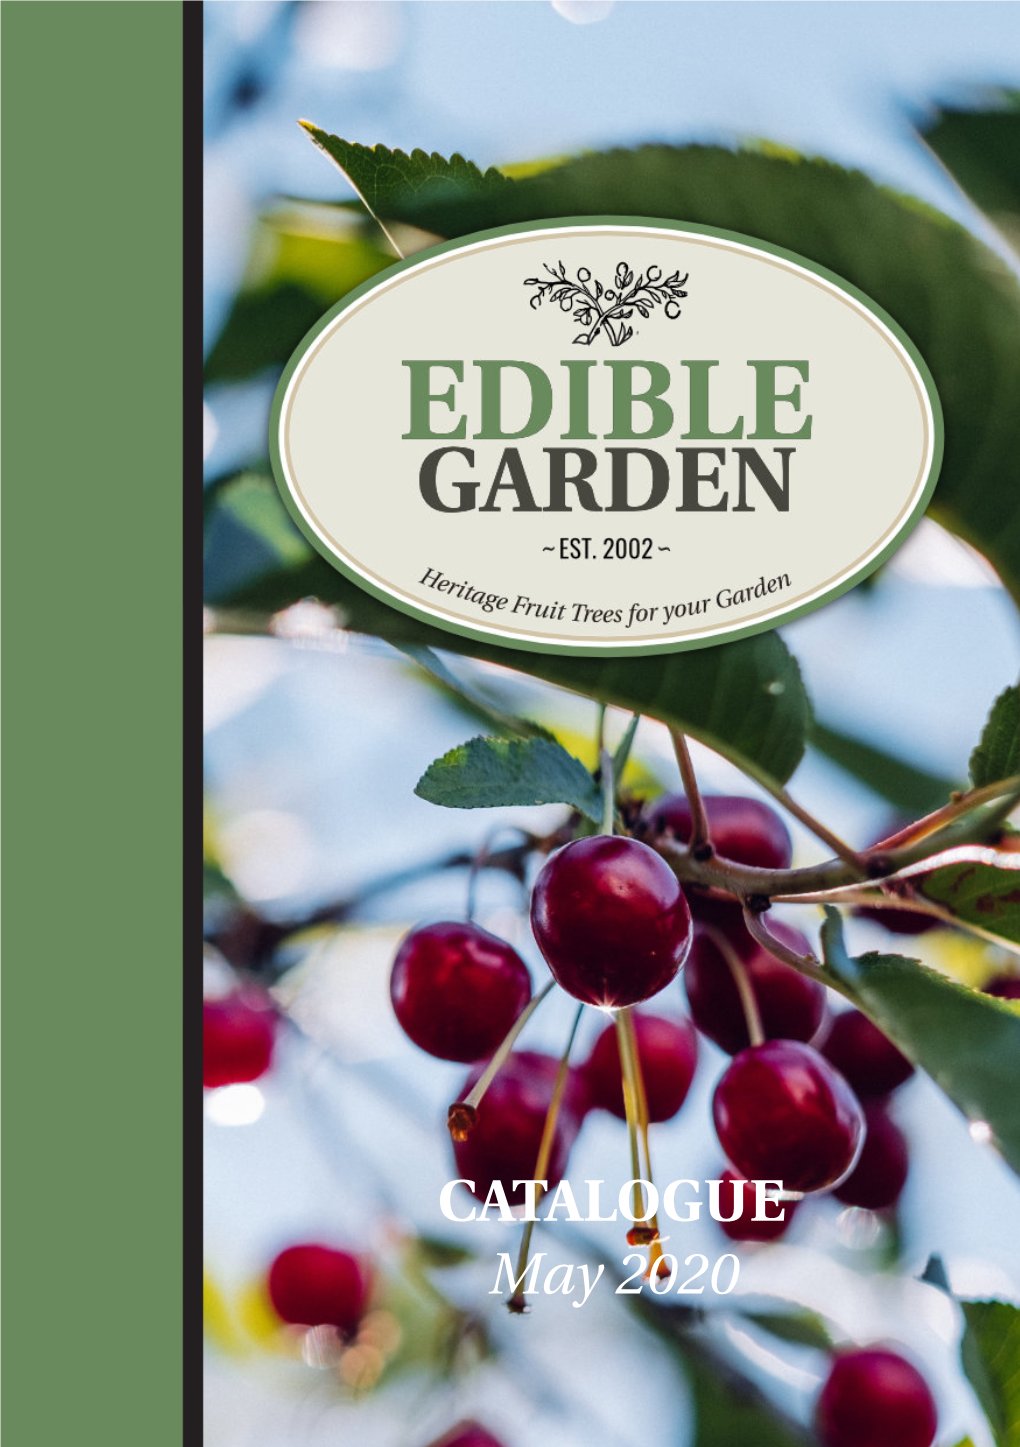 CATALOGUE May 2020 Welcome to the 2020 Edible Garden Catalogue